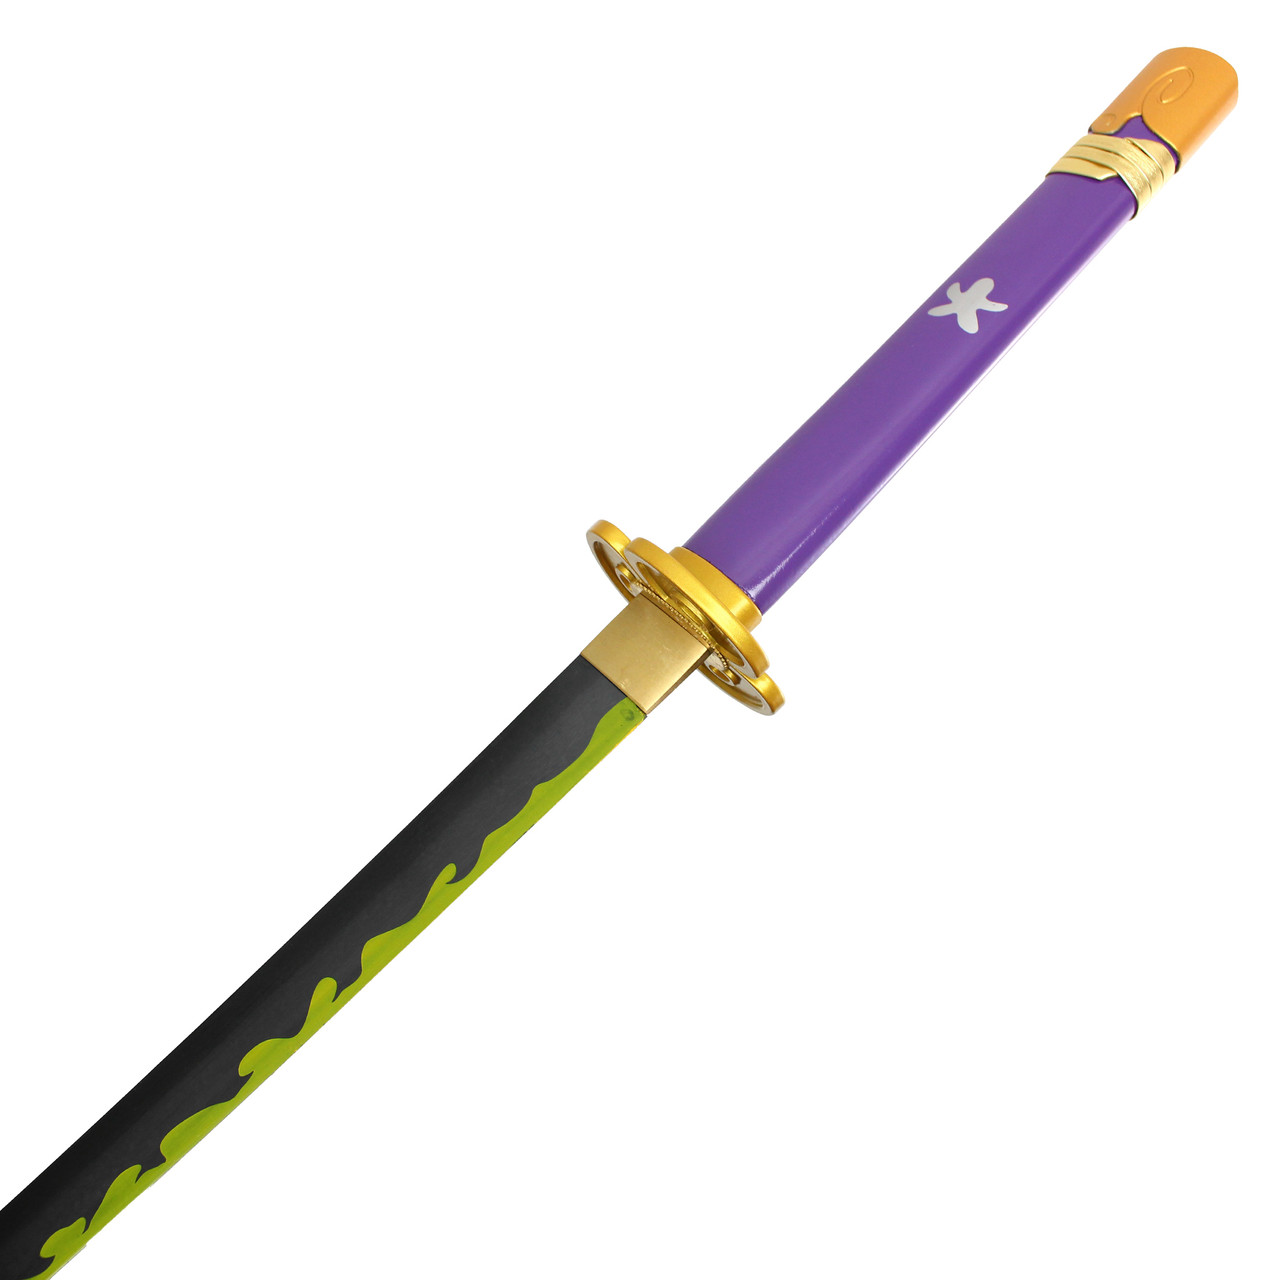 41" 1045 Steel Handmade Purple Sword w/ Scabbard